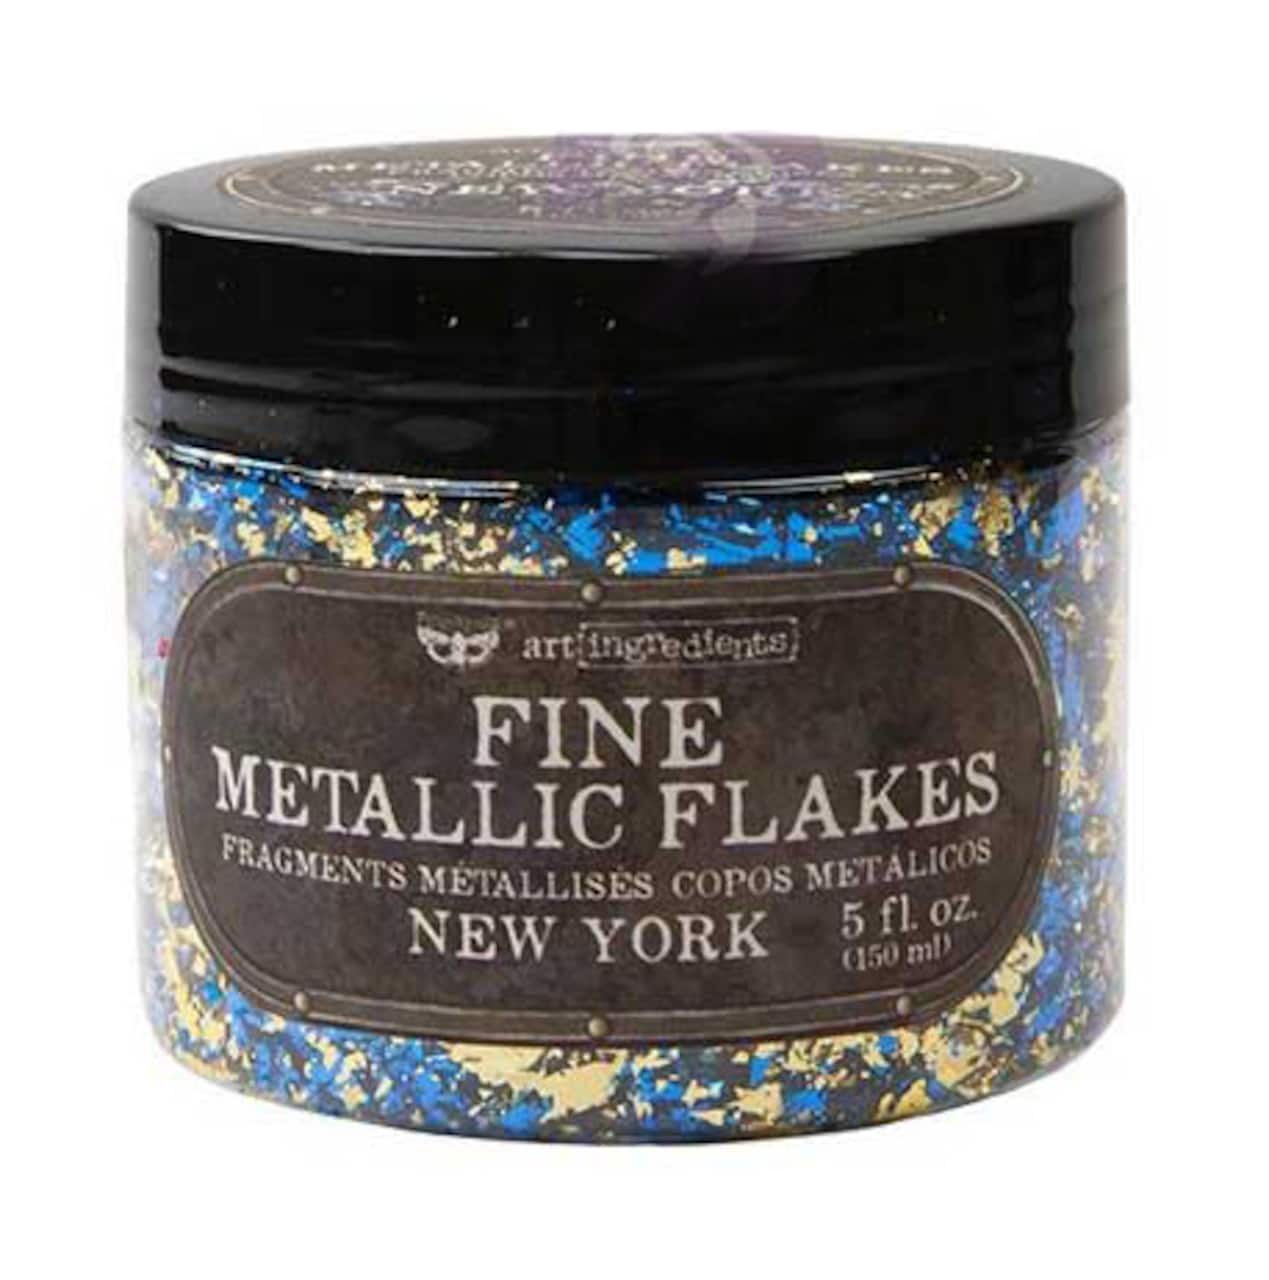 Finnabair&#xAE; Art Ingredients Metal Flakes, 150mL